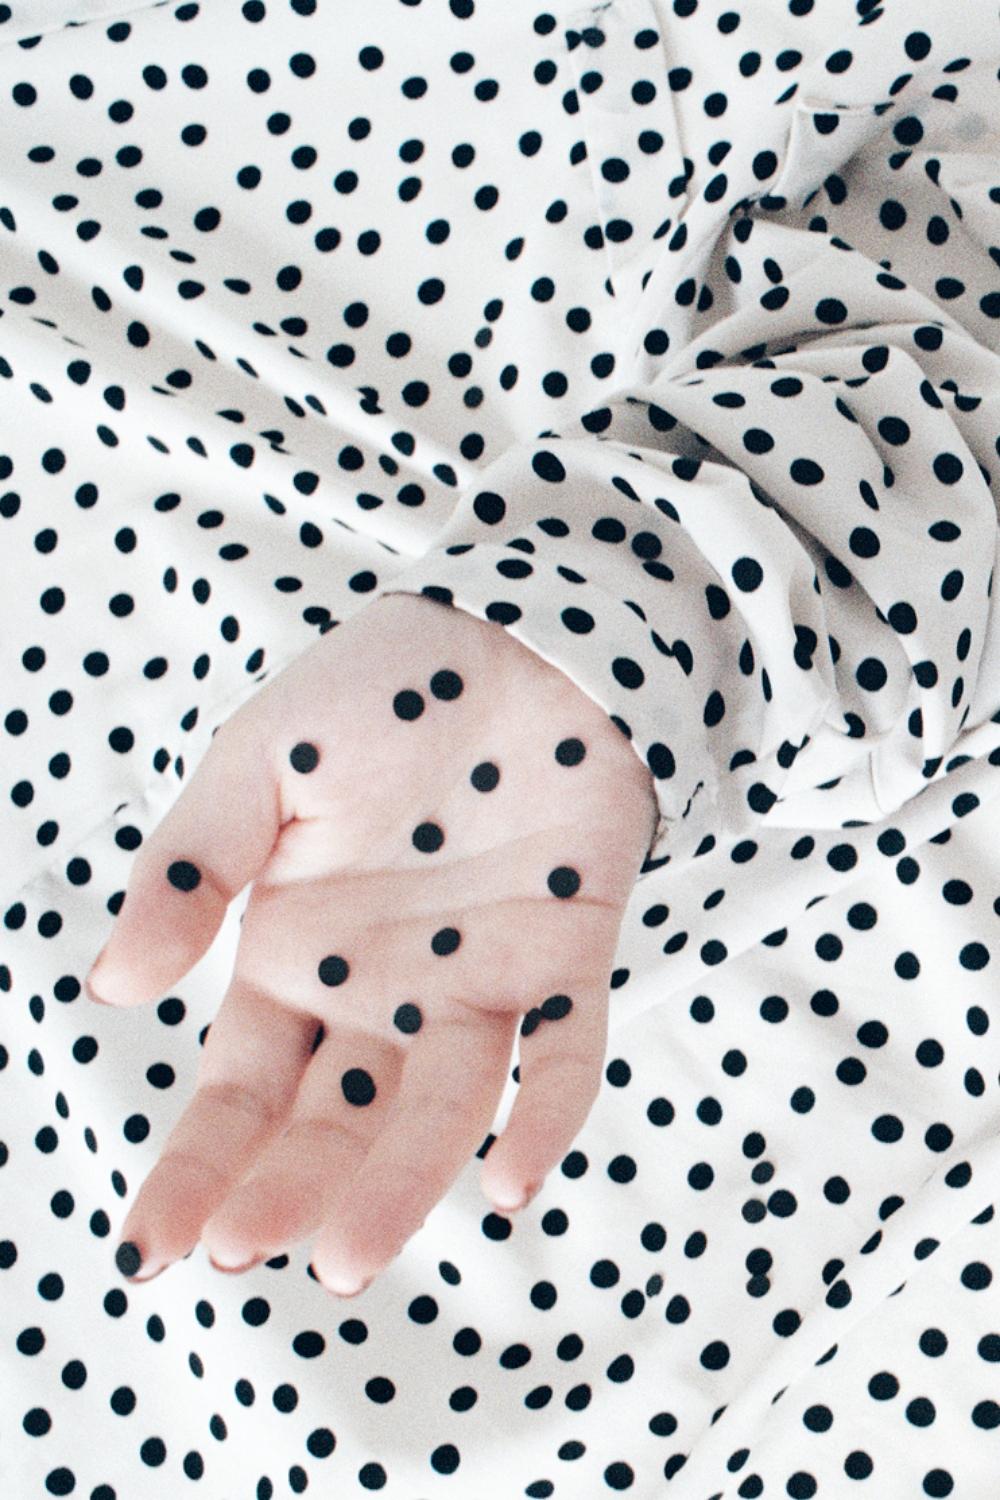 a dot dot dot – Ina Jang, Abstract, Minimalistic, Surrealism, Hands, Dots 1